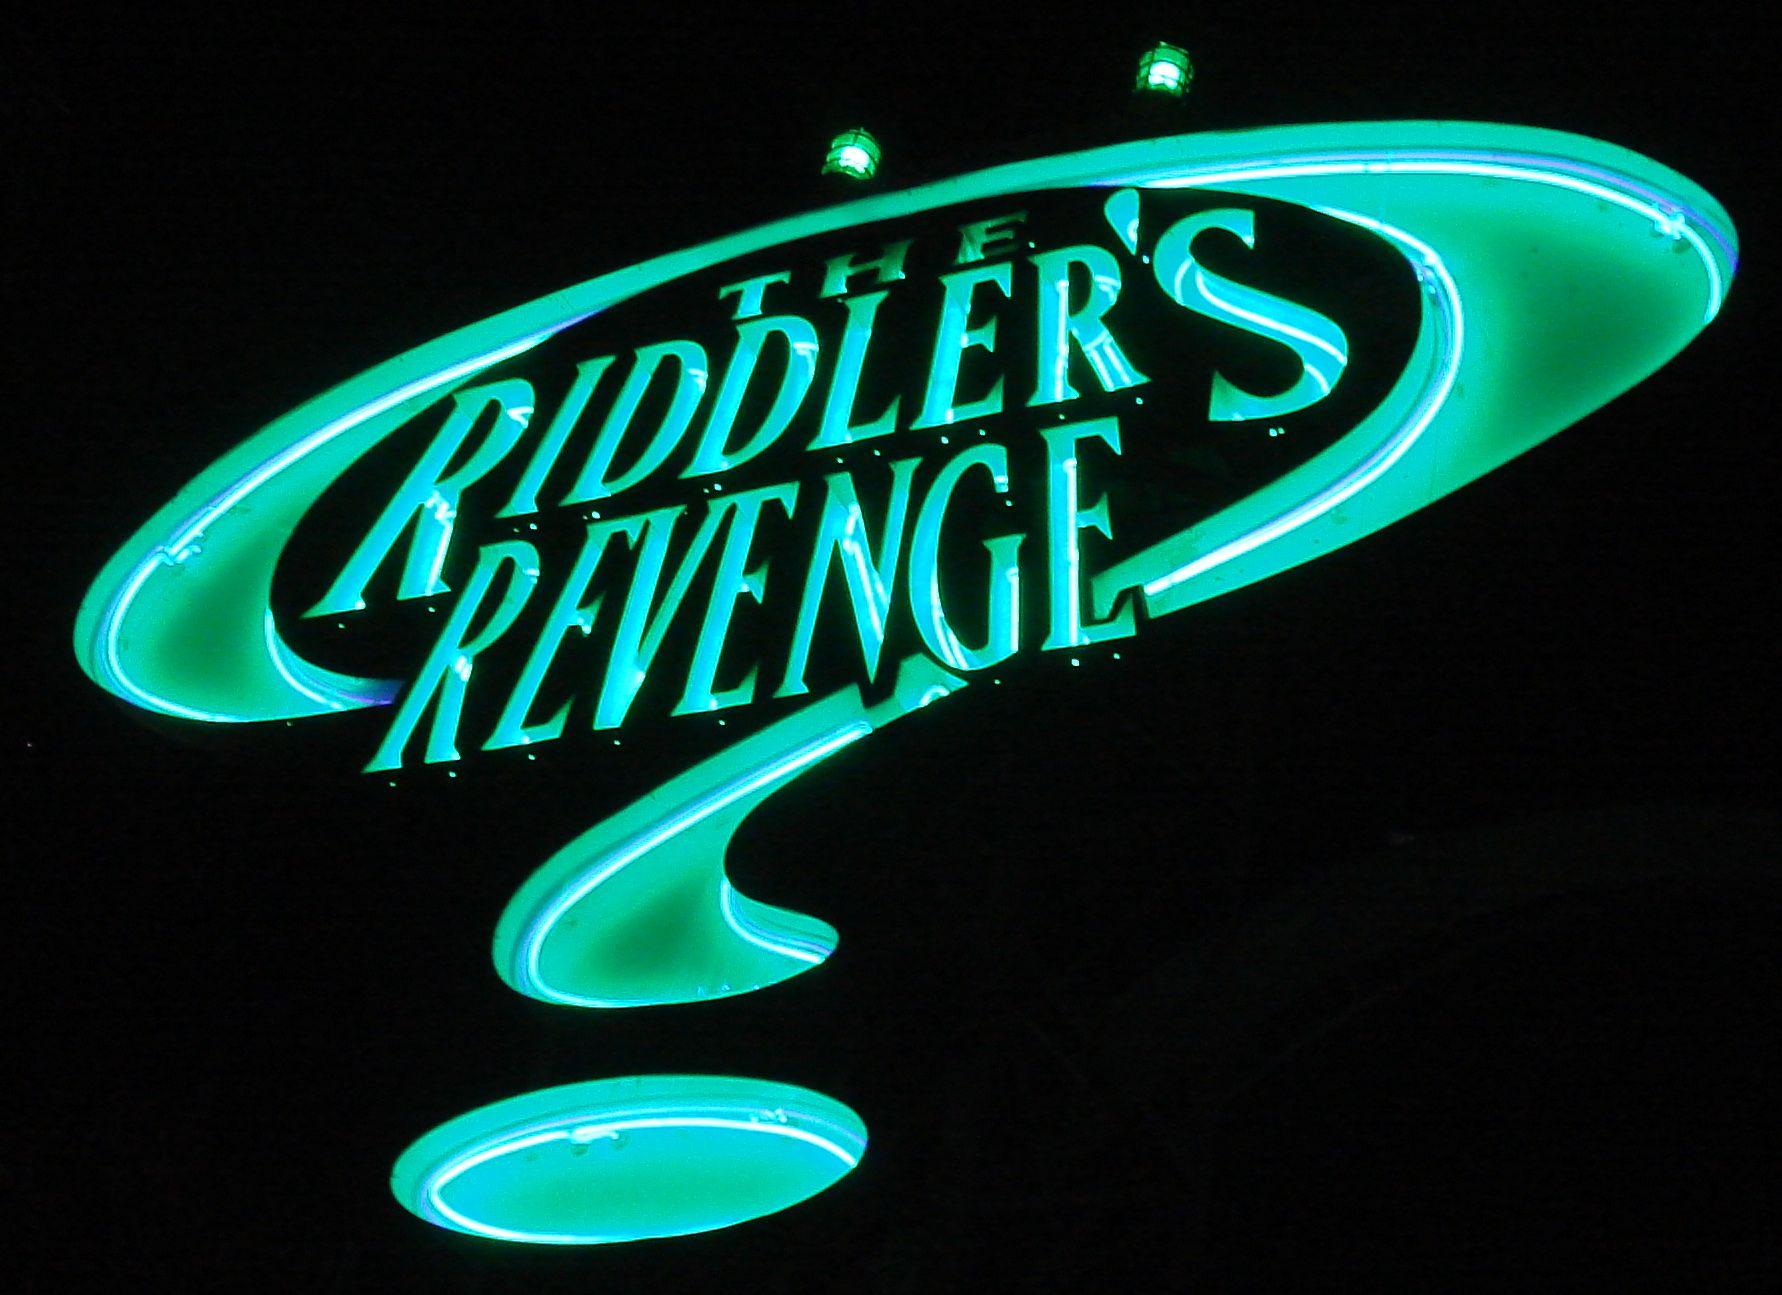 Riddler Logo - The Riddler's Revenge